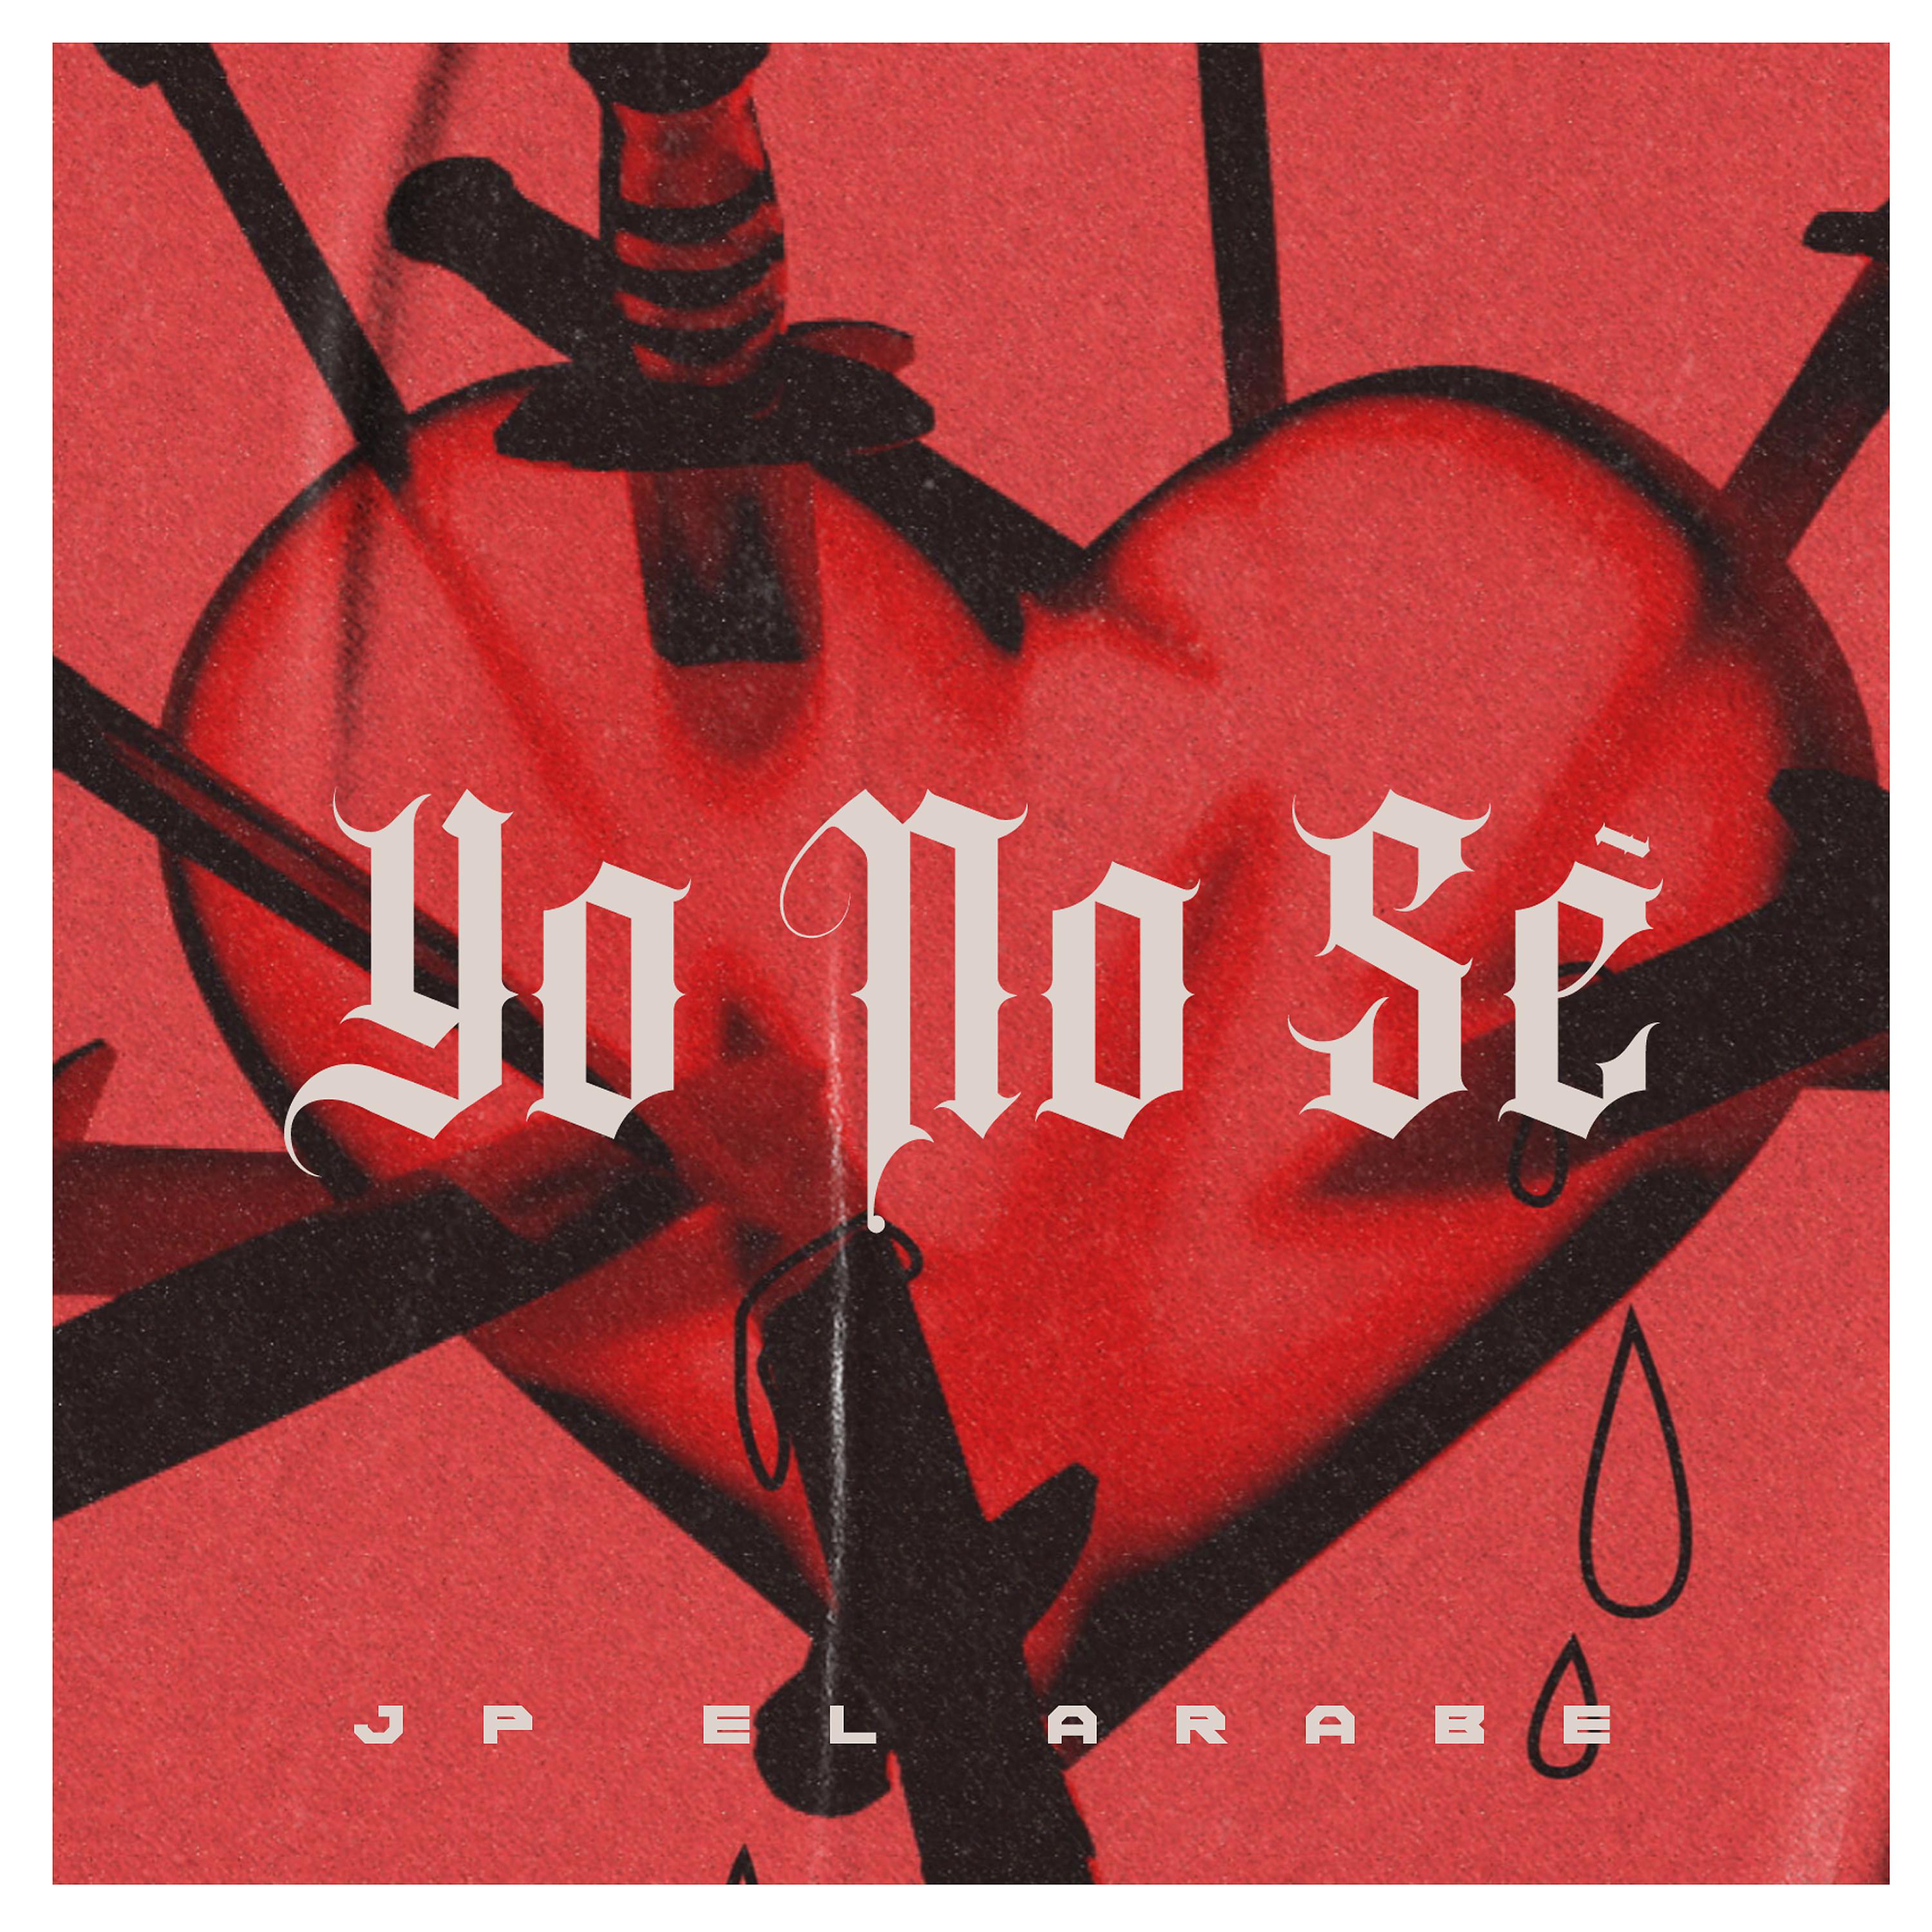 Постер альбома Yo No Se